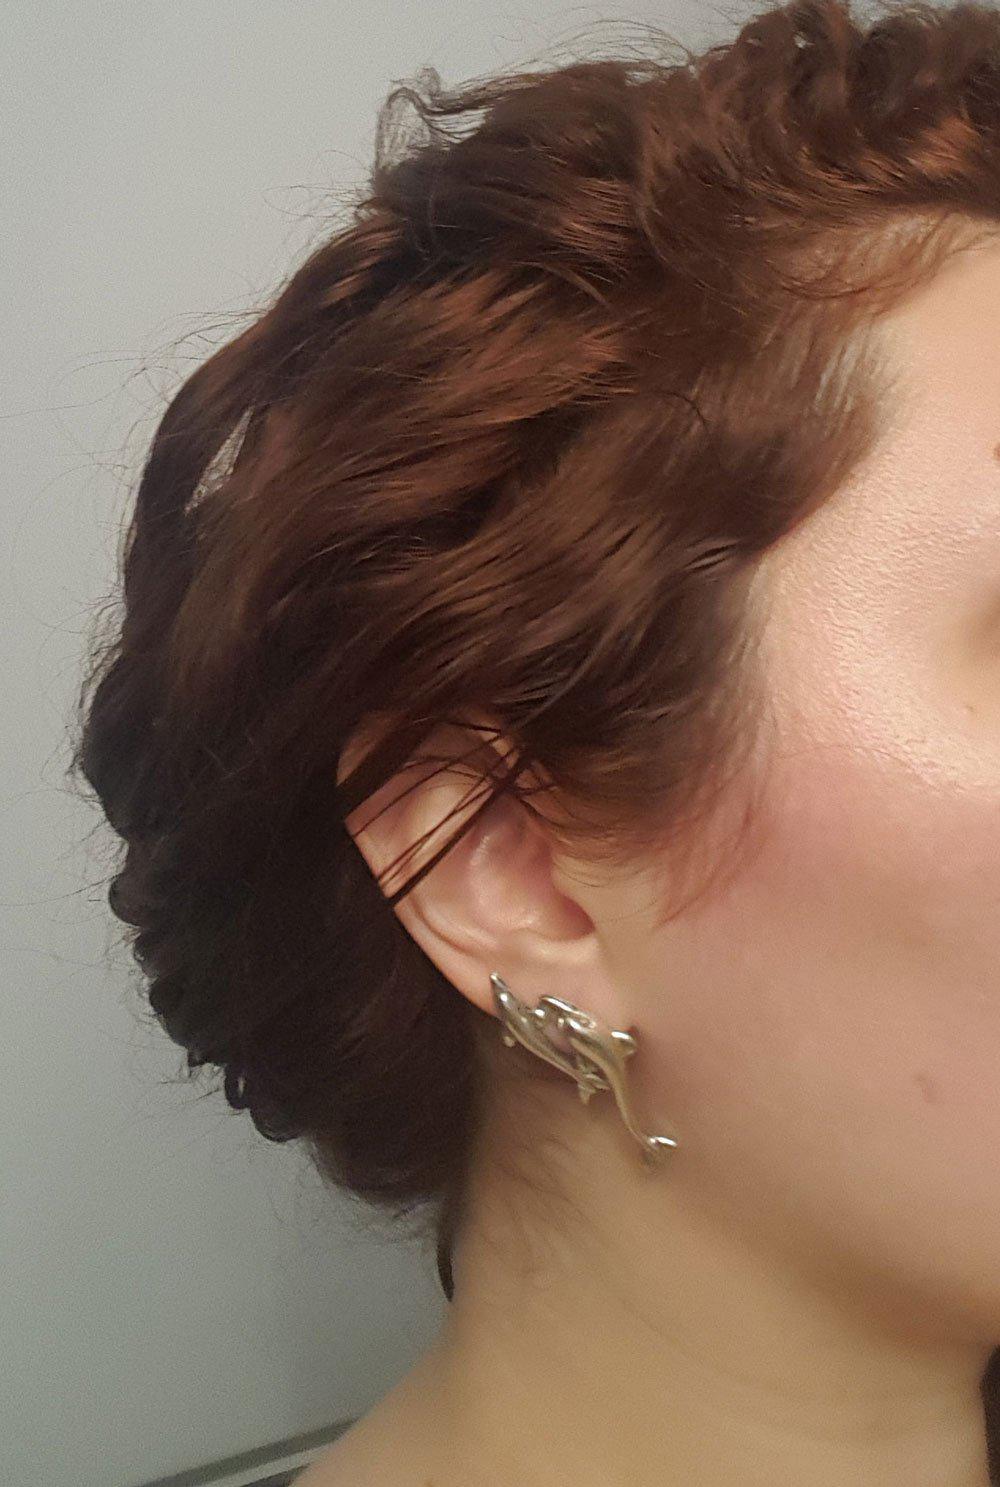 Minoan Dolphins Earrings, sterling silver earrings, Greek Jewelry, Womens Fashion (AG-01)